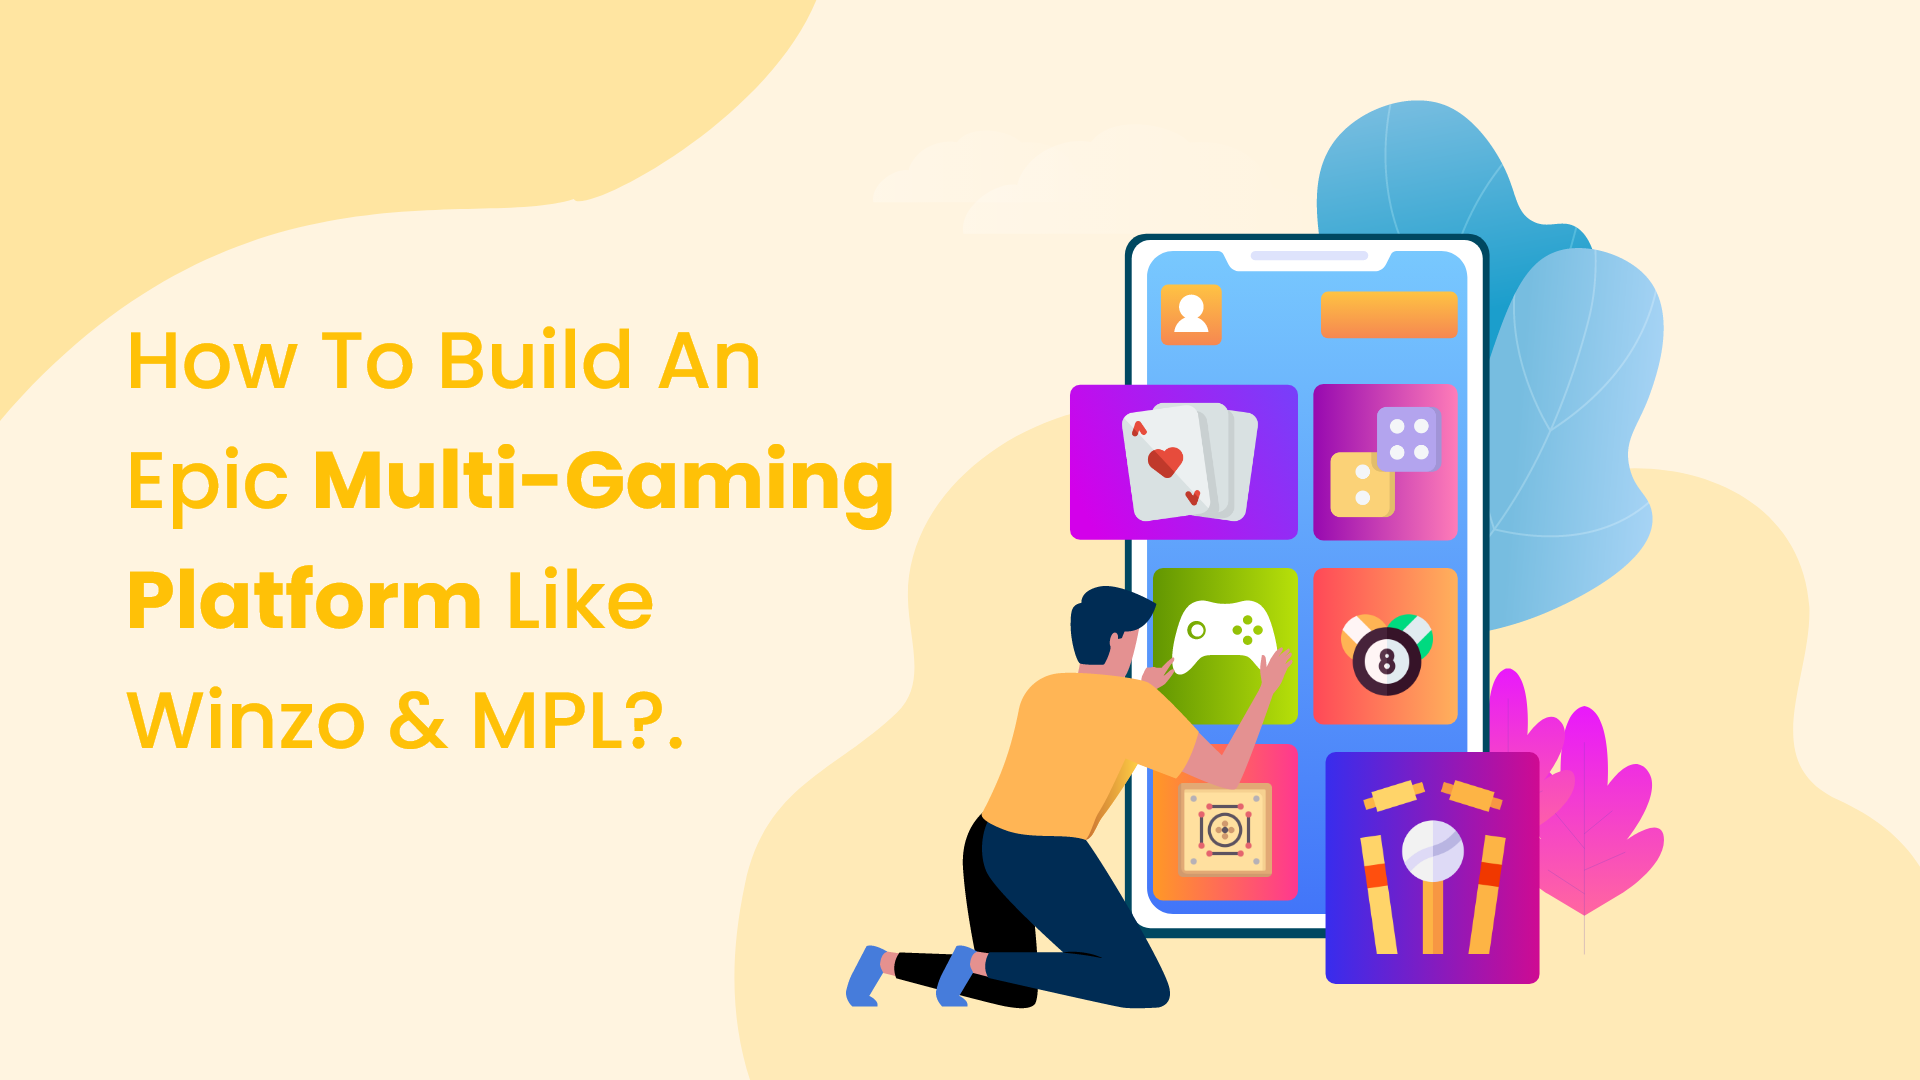 Puzzle Games - MPL Blog